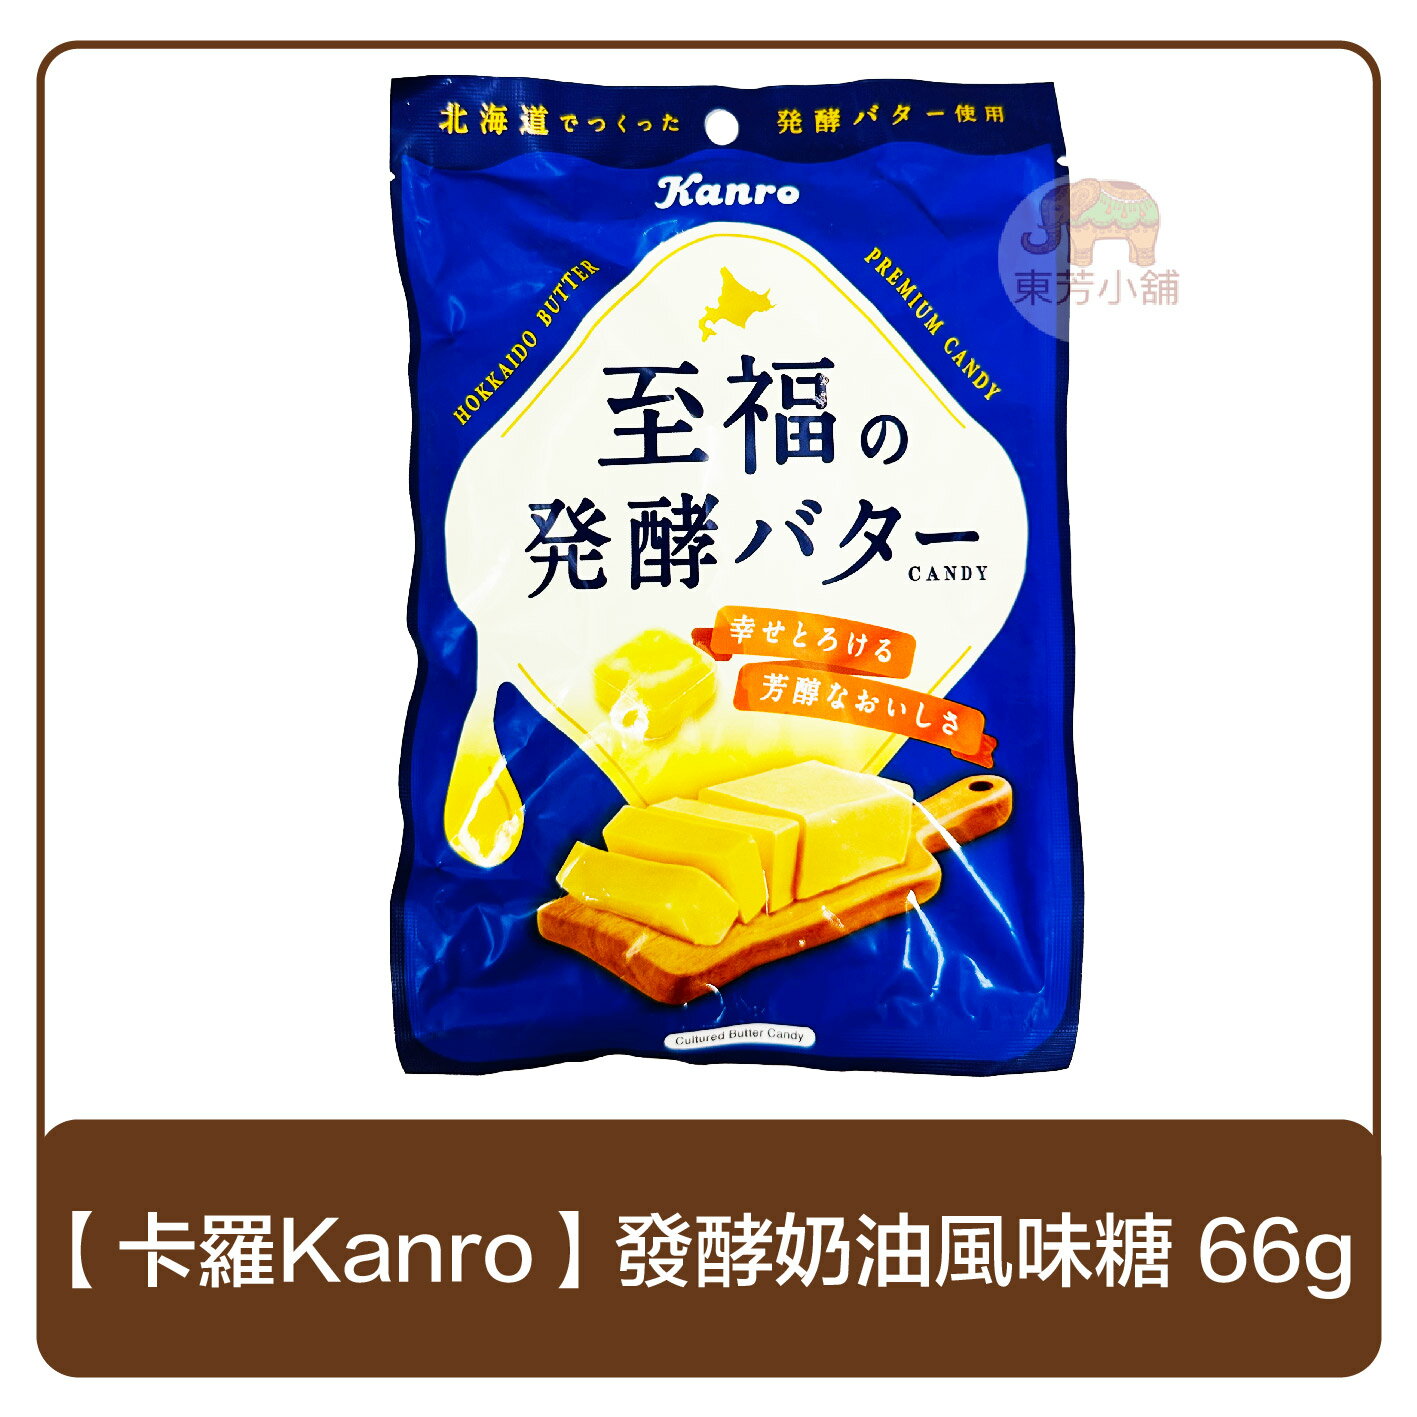 日本 卡羅Kanro 甘樂 至福發酵奶油風味糖 66g